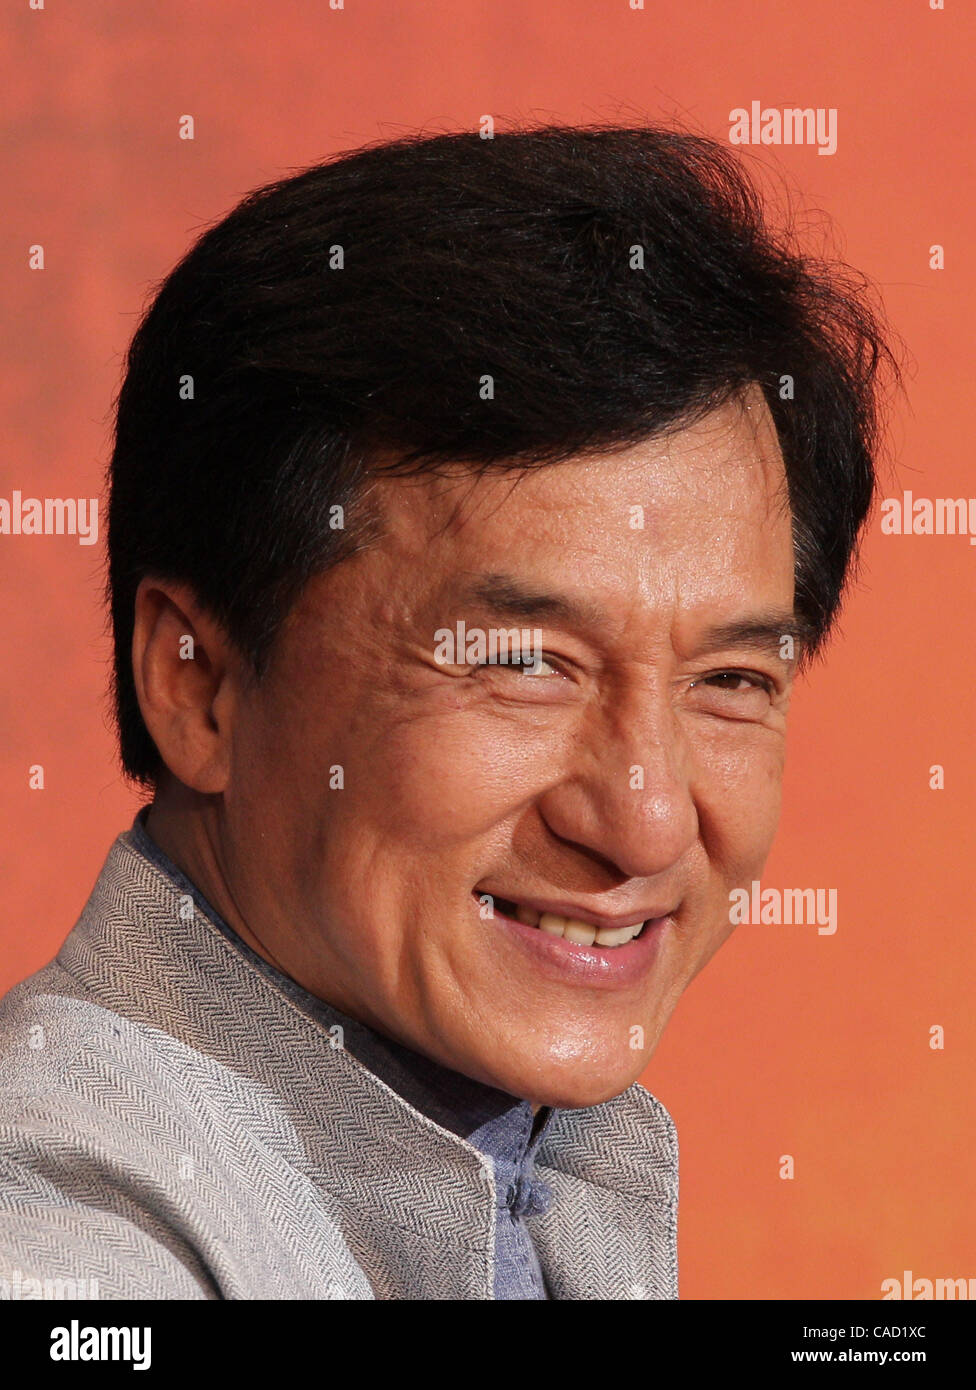 5. August 2010 - Tokyo, Japan - chinesischer Schauspieler Jackie Chan besucht die japanische Erstaufführung von "Karate Kid" auf dem roten Teppich am Roppongi Hills am 5. August 2010 in Tokio, Japan. (Kredit-Bild: © Koichi Kamoshida/Jana/ZUMApress.com) Stockfoto